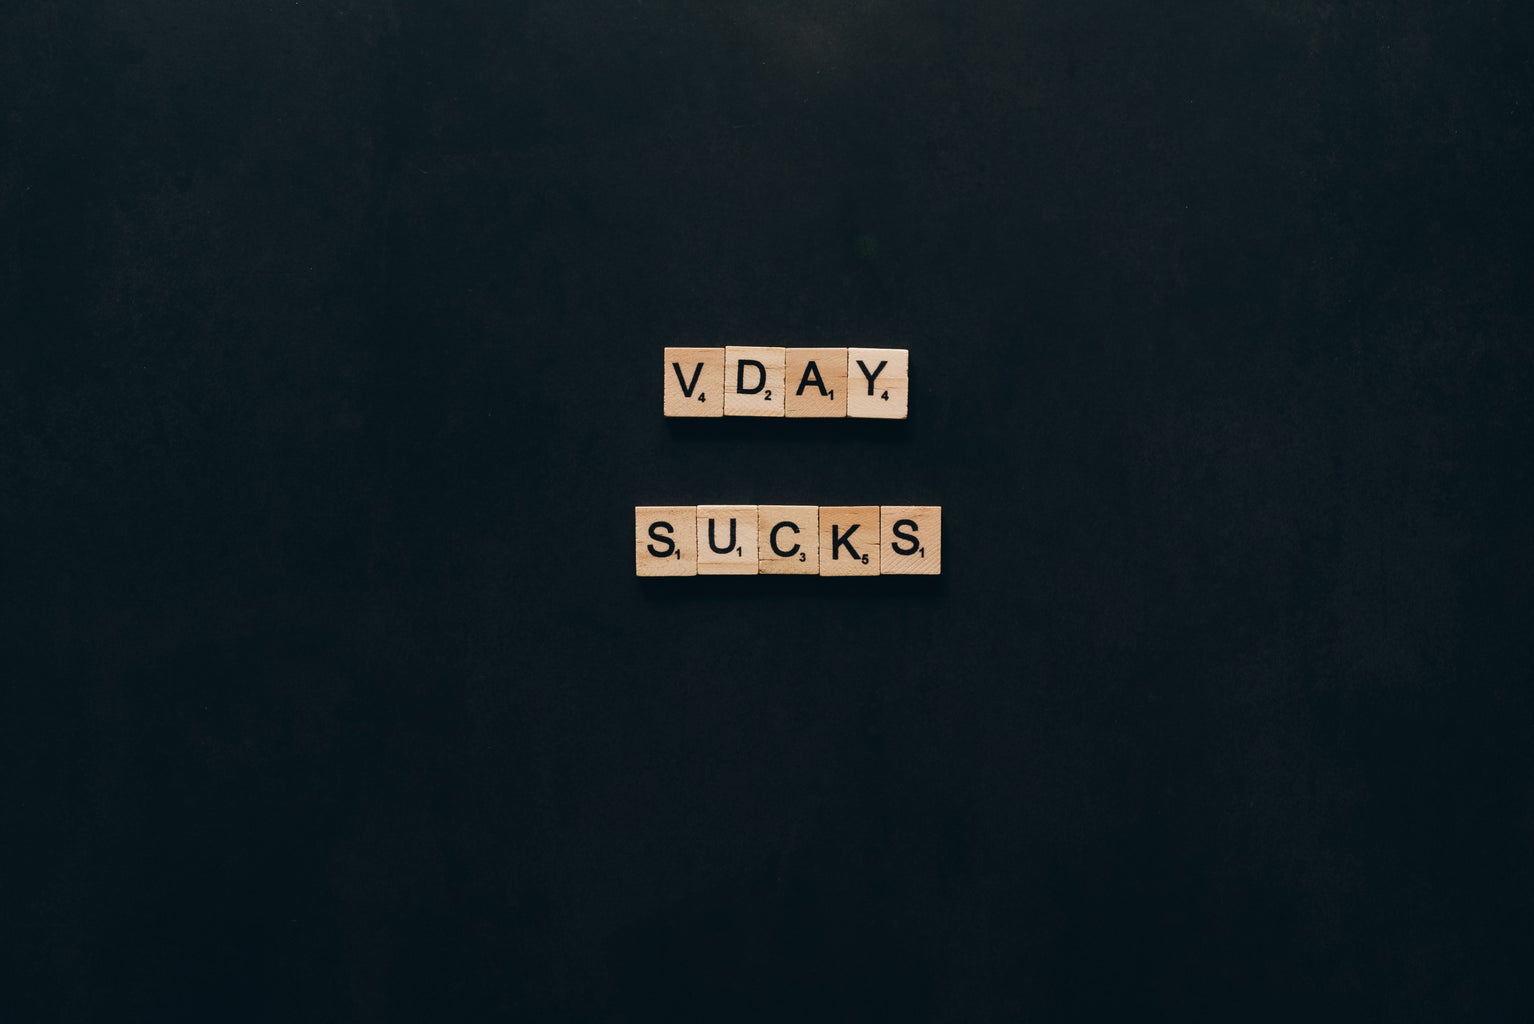 Vday sucks